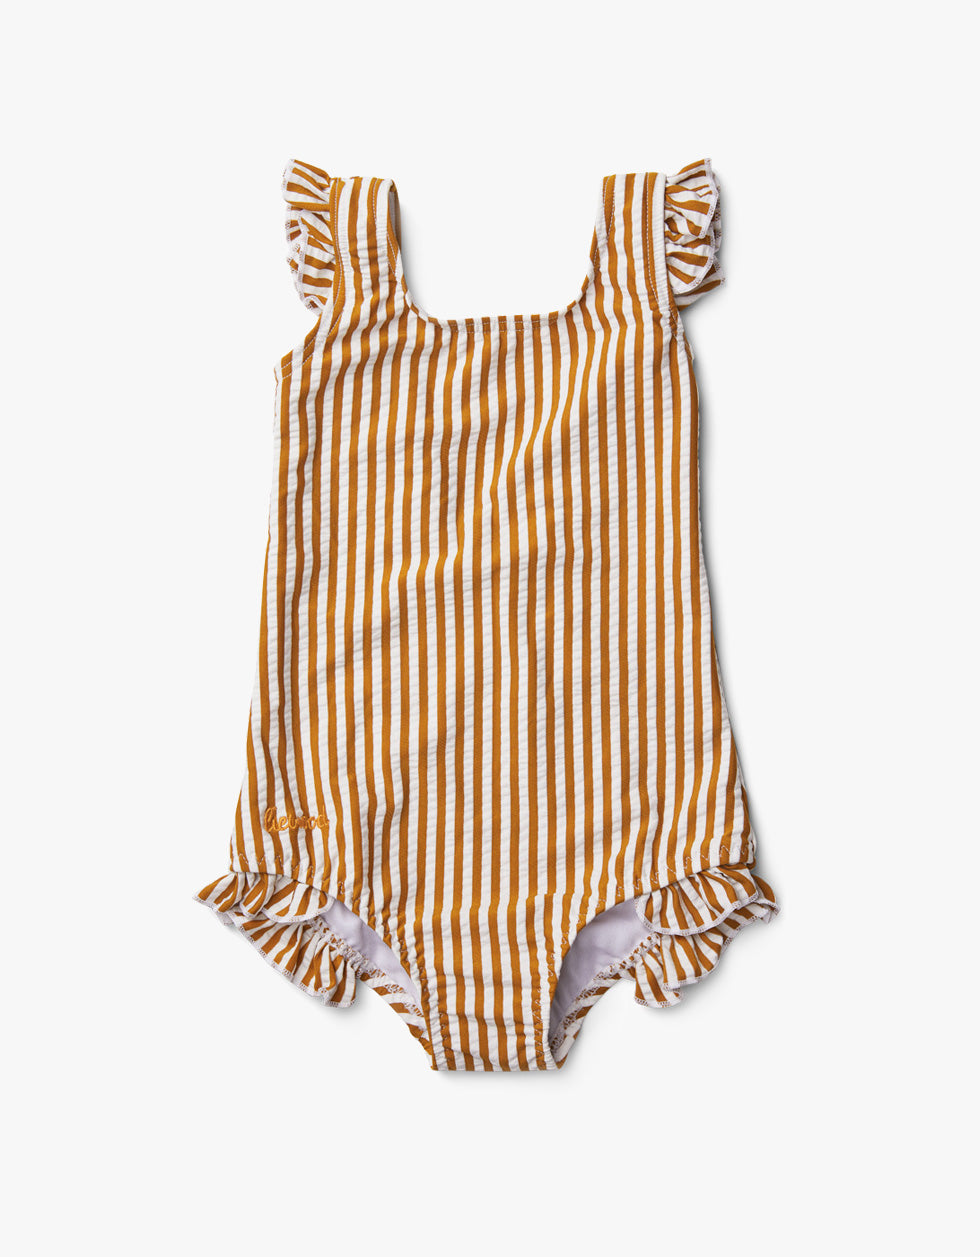 Tanna Swimsuit Seersucker - Y/D Stripe: Mustard/White